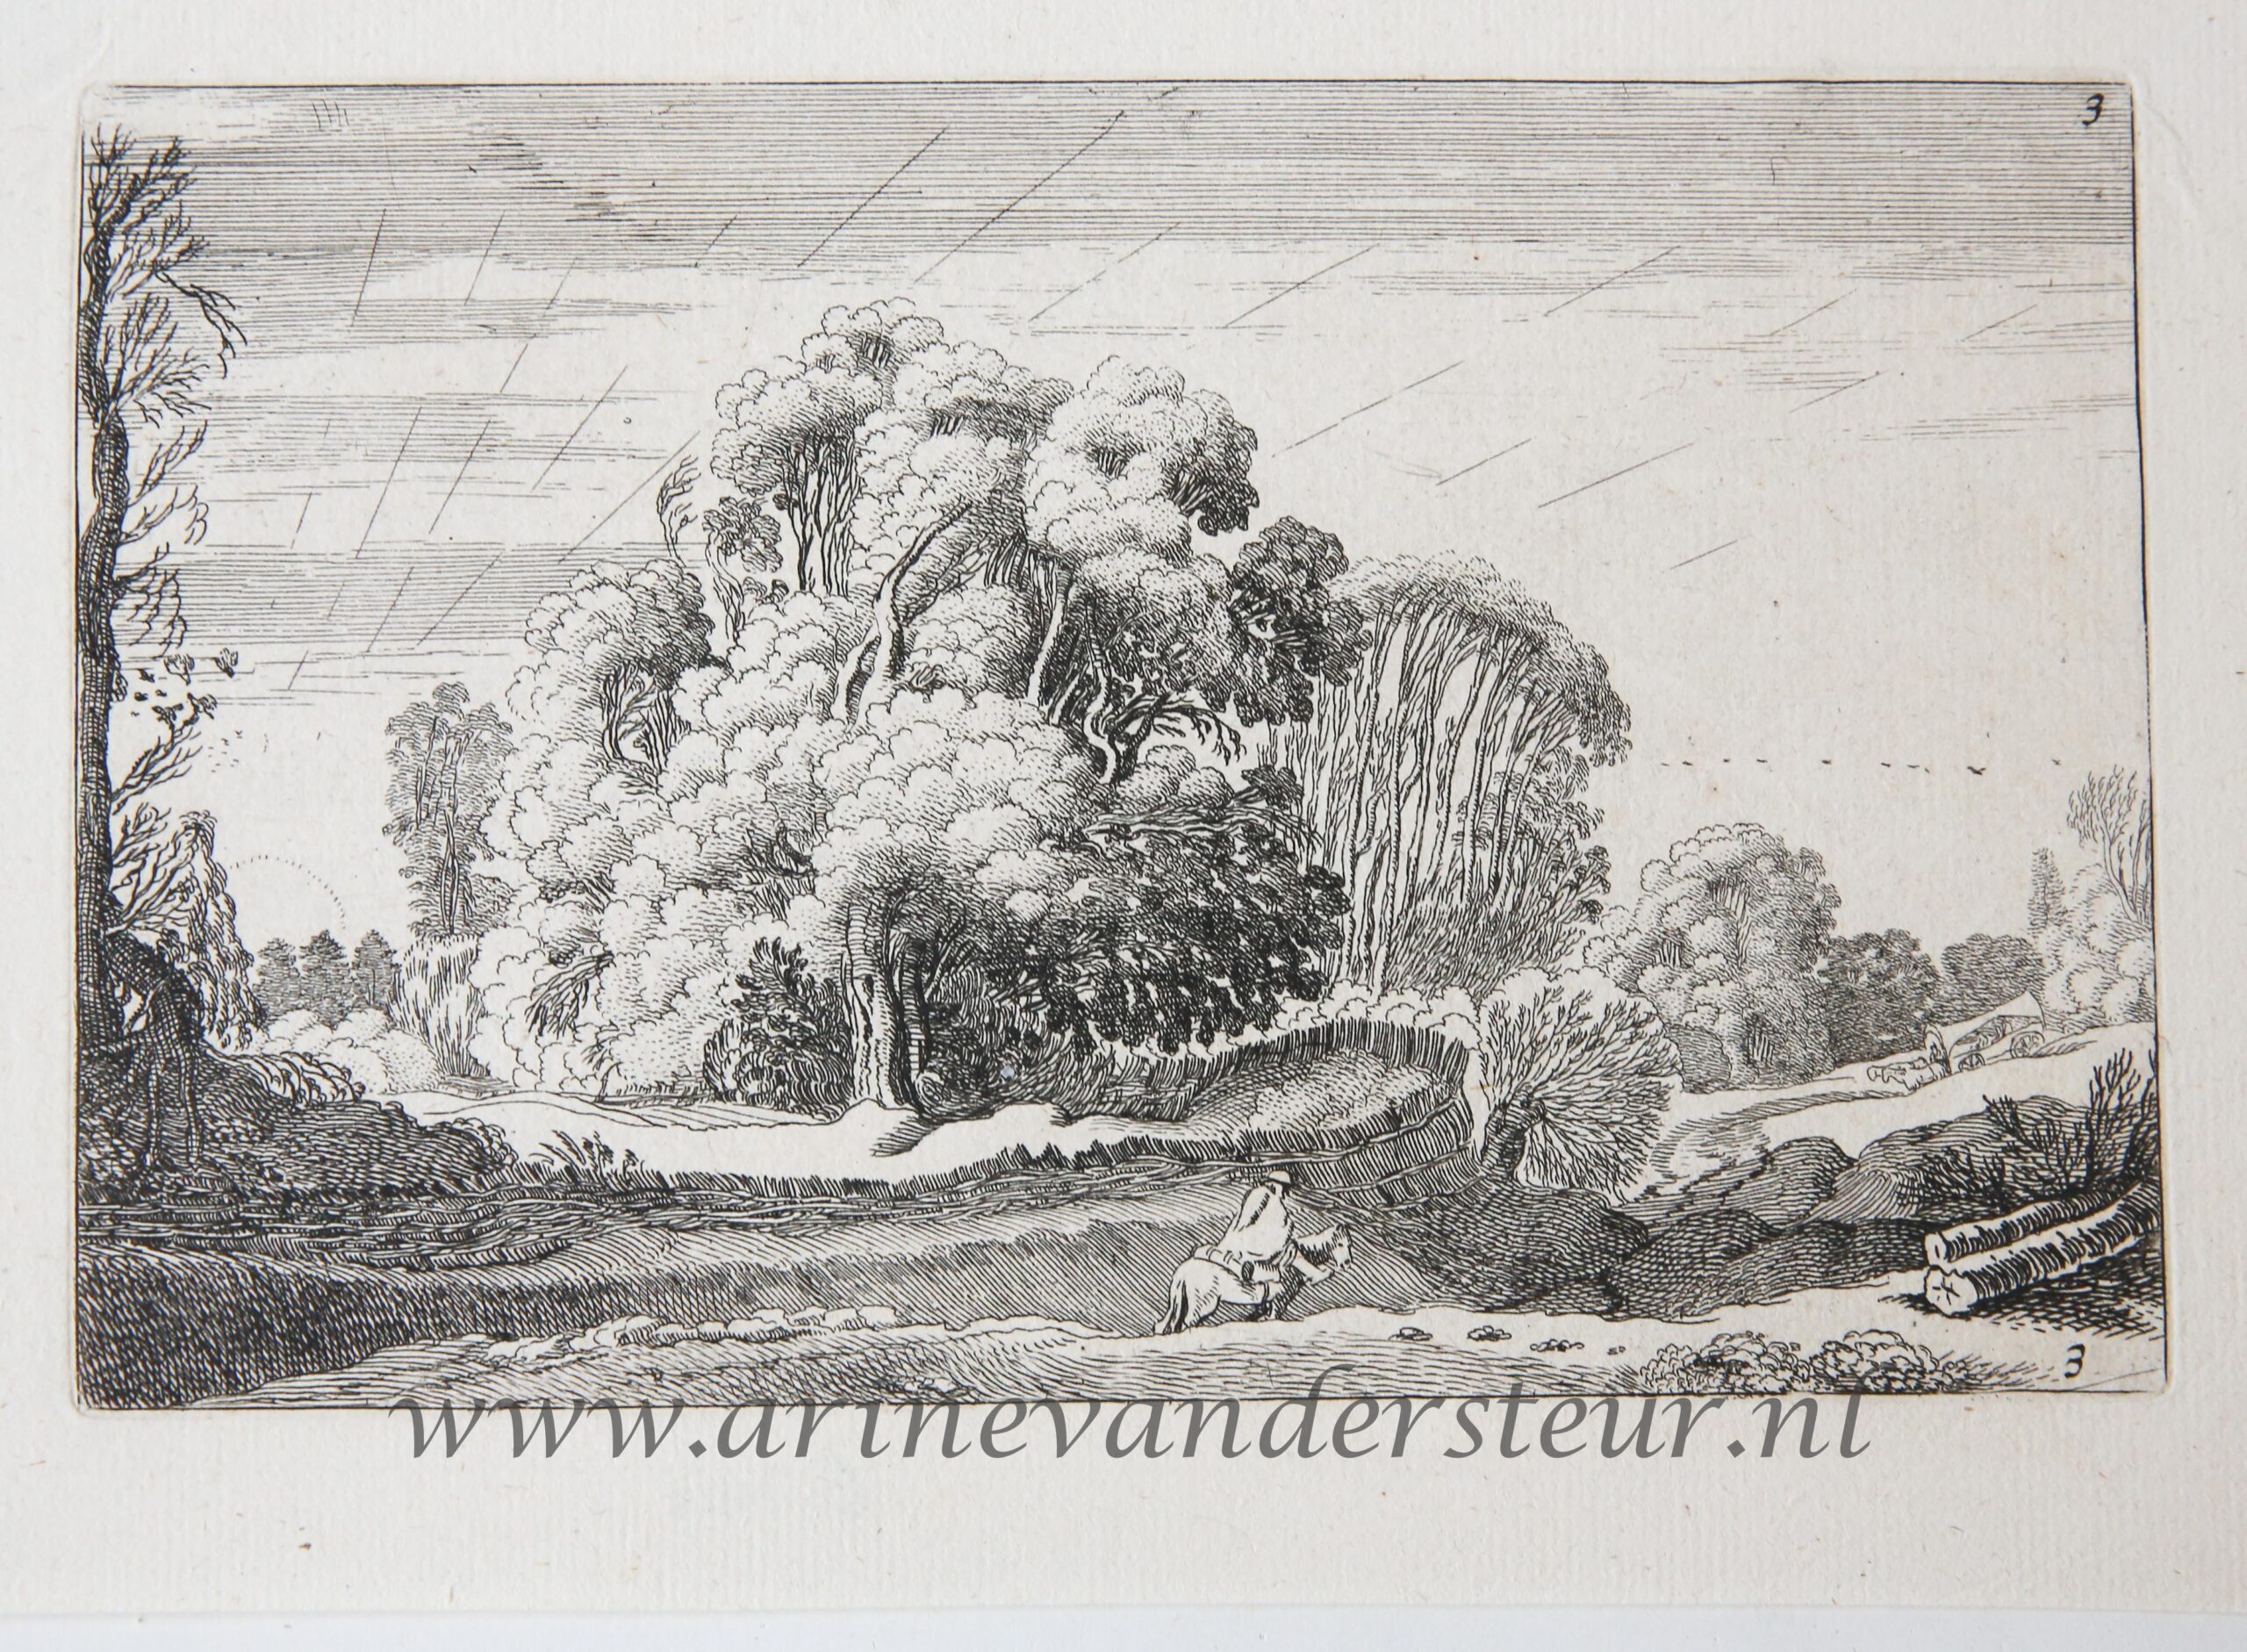 [Antique etching, ets, landscape print] J. v.d. Velde II, Horse rider in a landscape at sunrise, published before 1713.